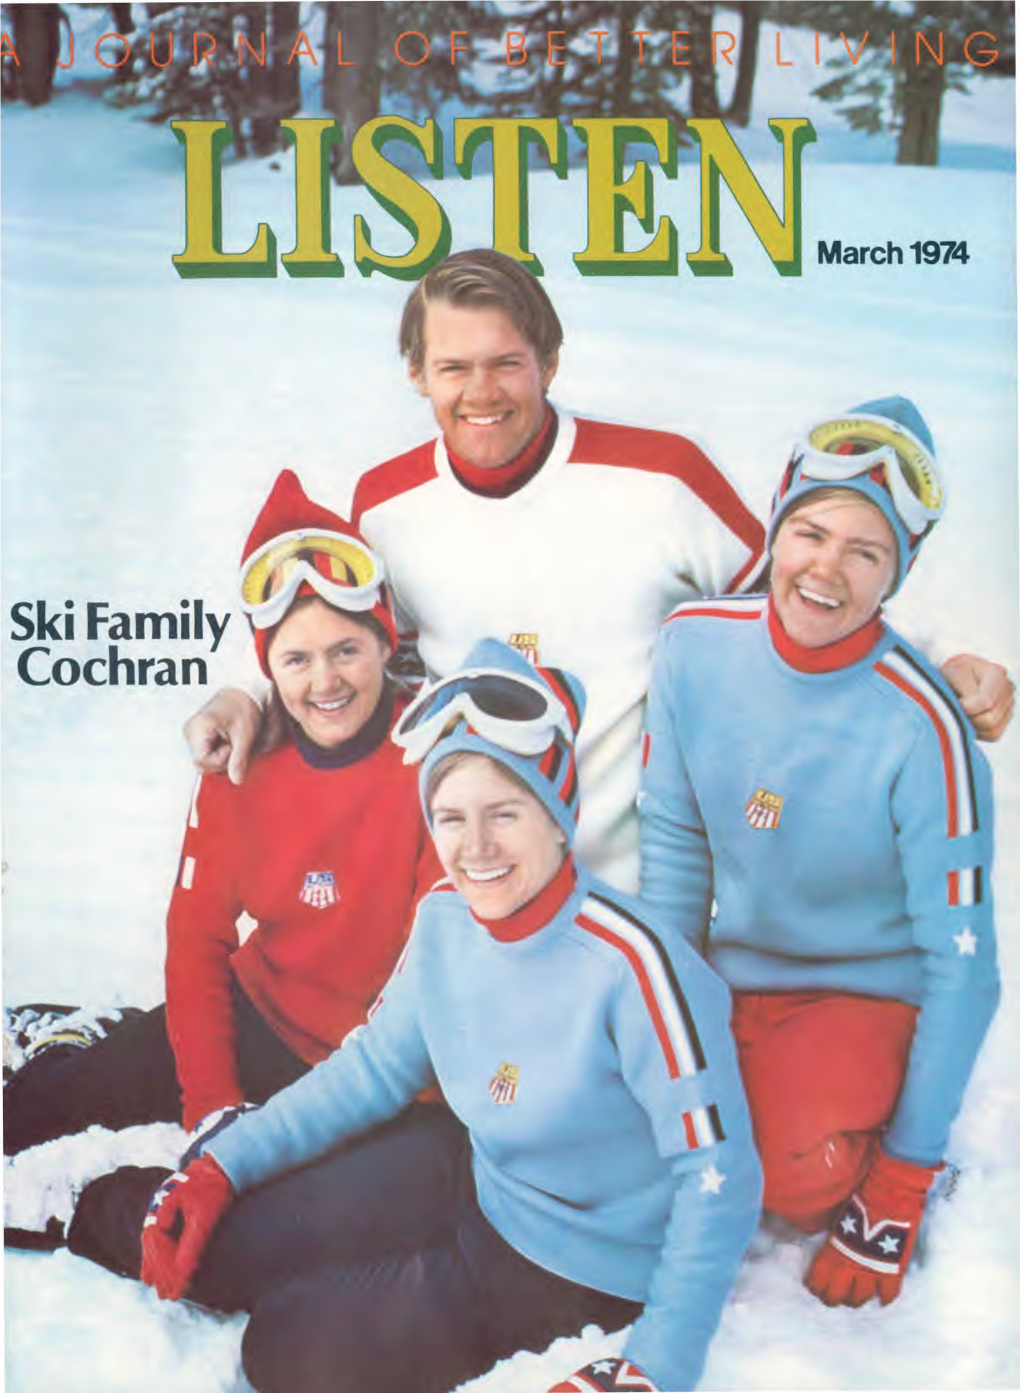 Ski Family Cochran